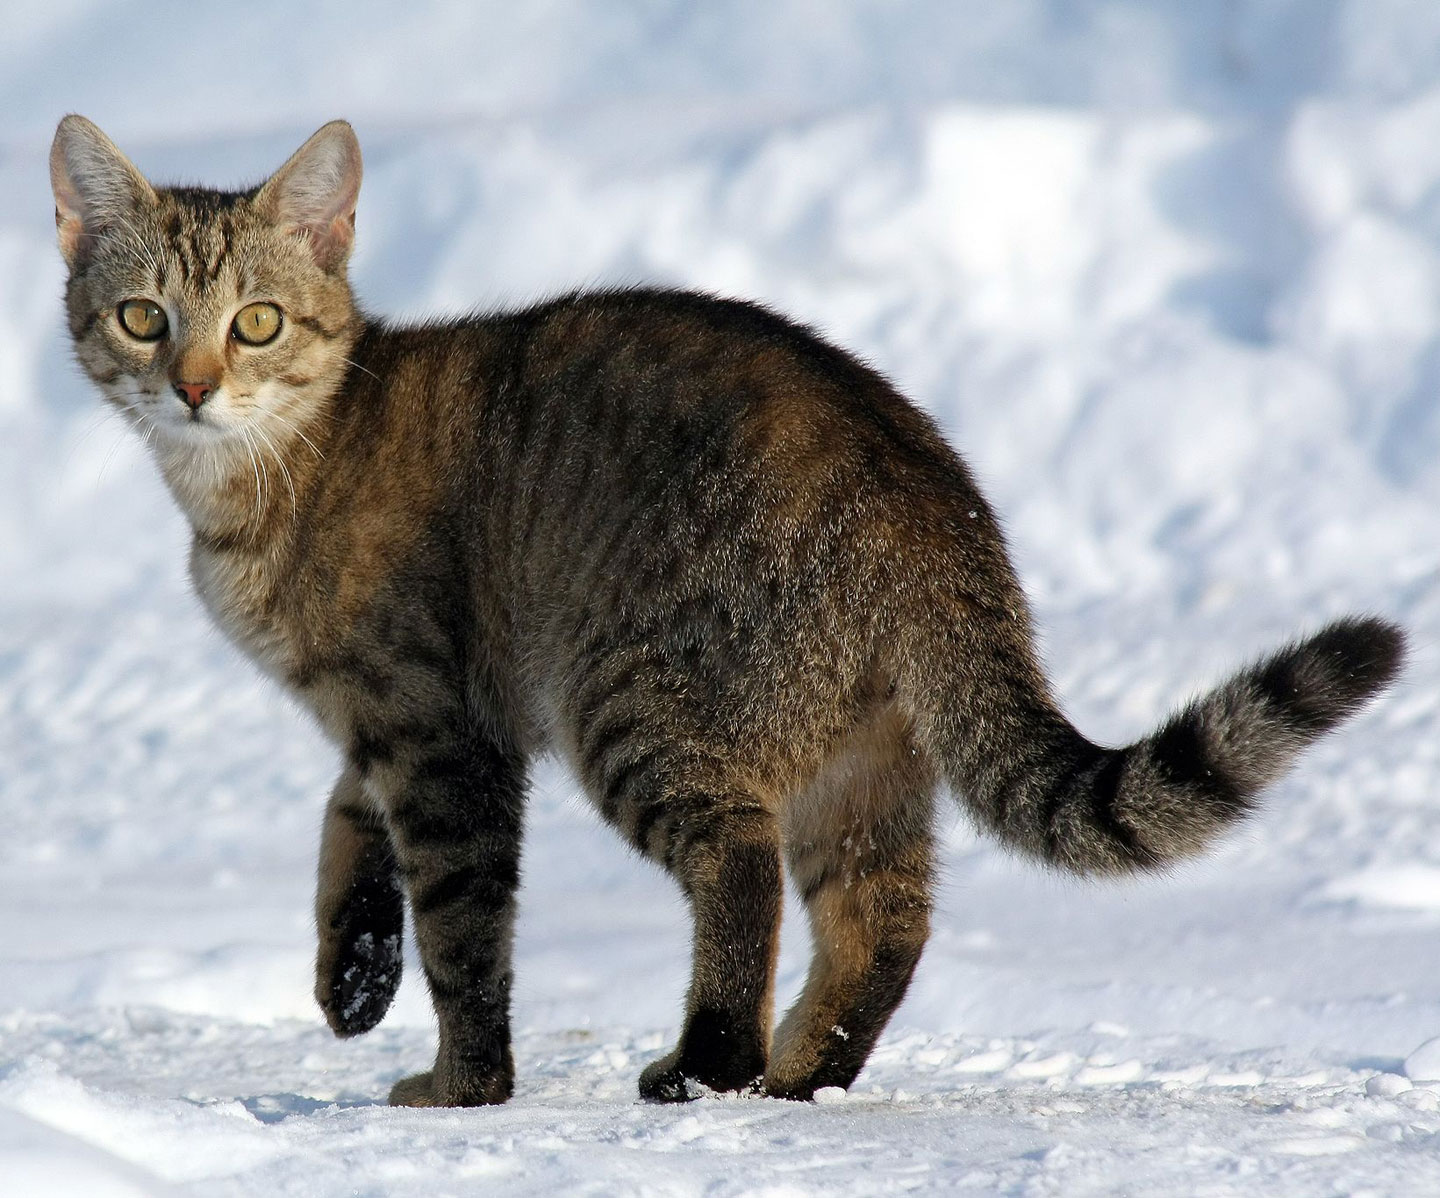 Adult cat walking in a snowy area